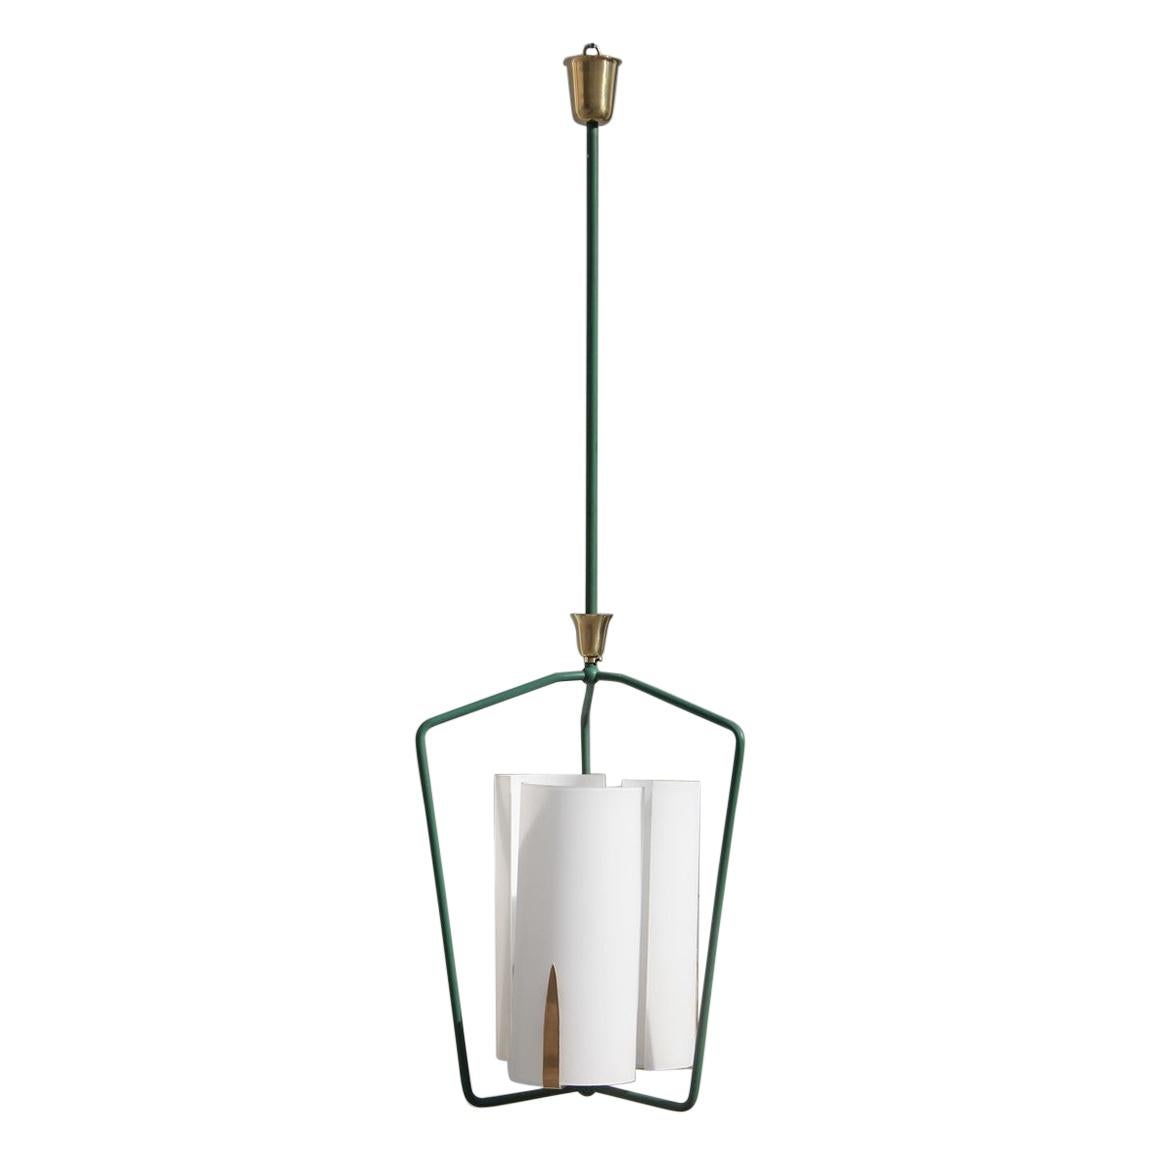 Stilnovo Style Lantern Midcentury Italian Design Gold Green White Glass For Sale